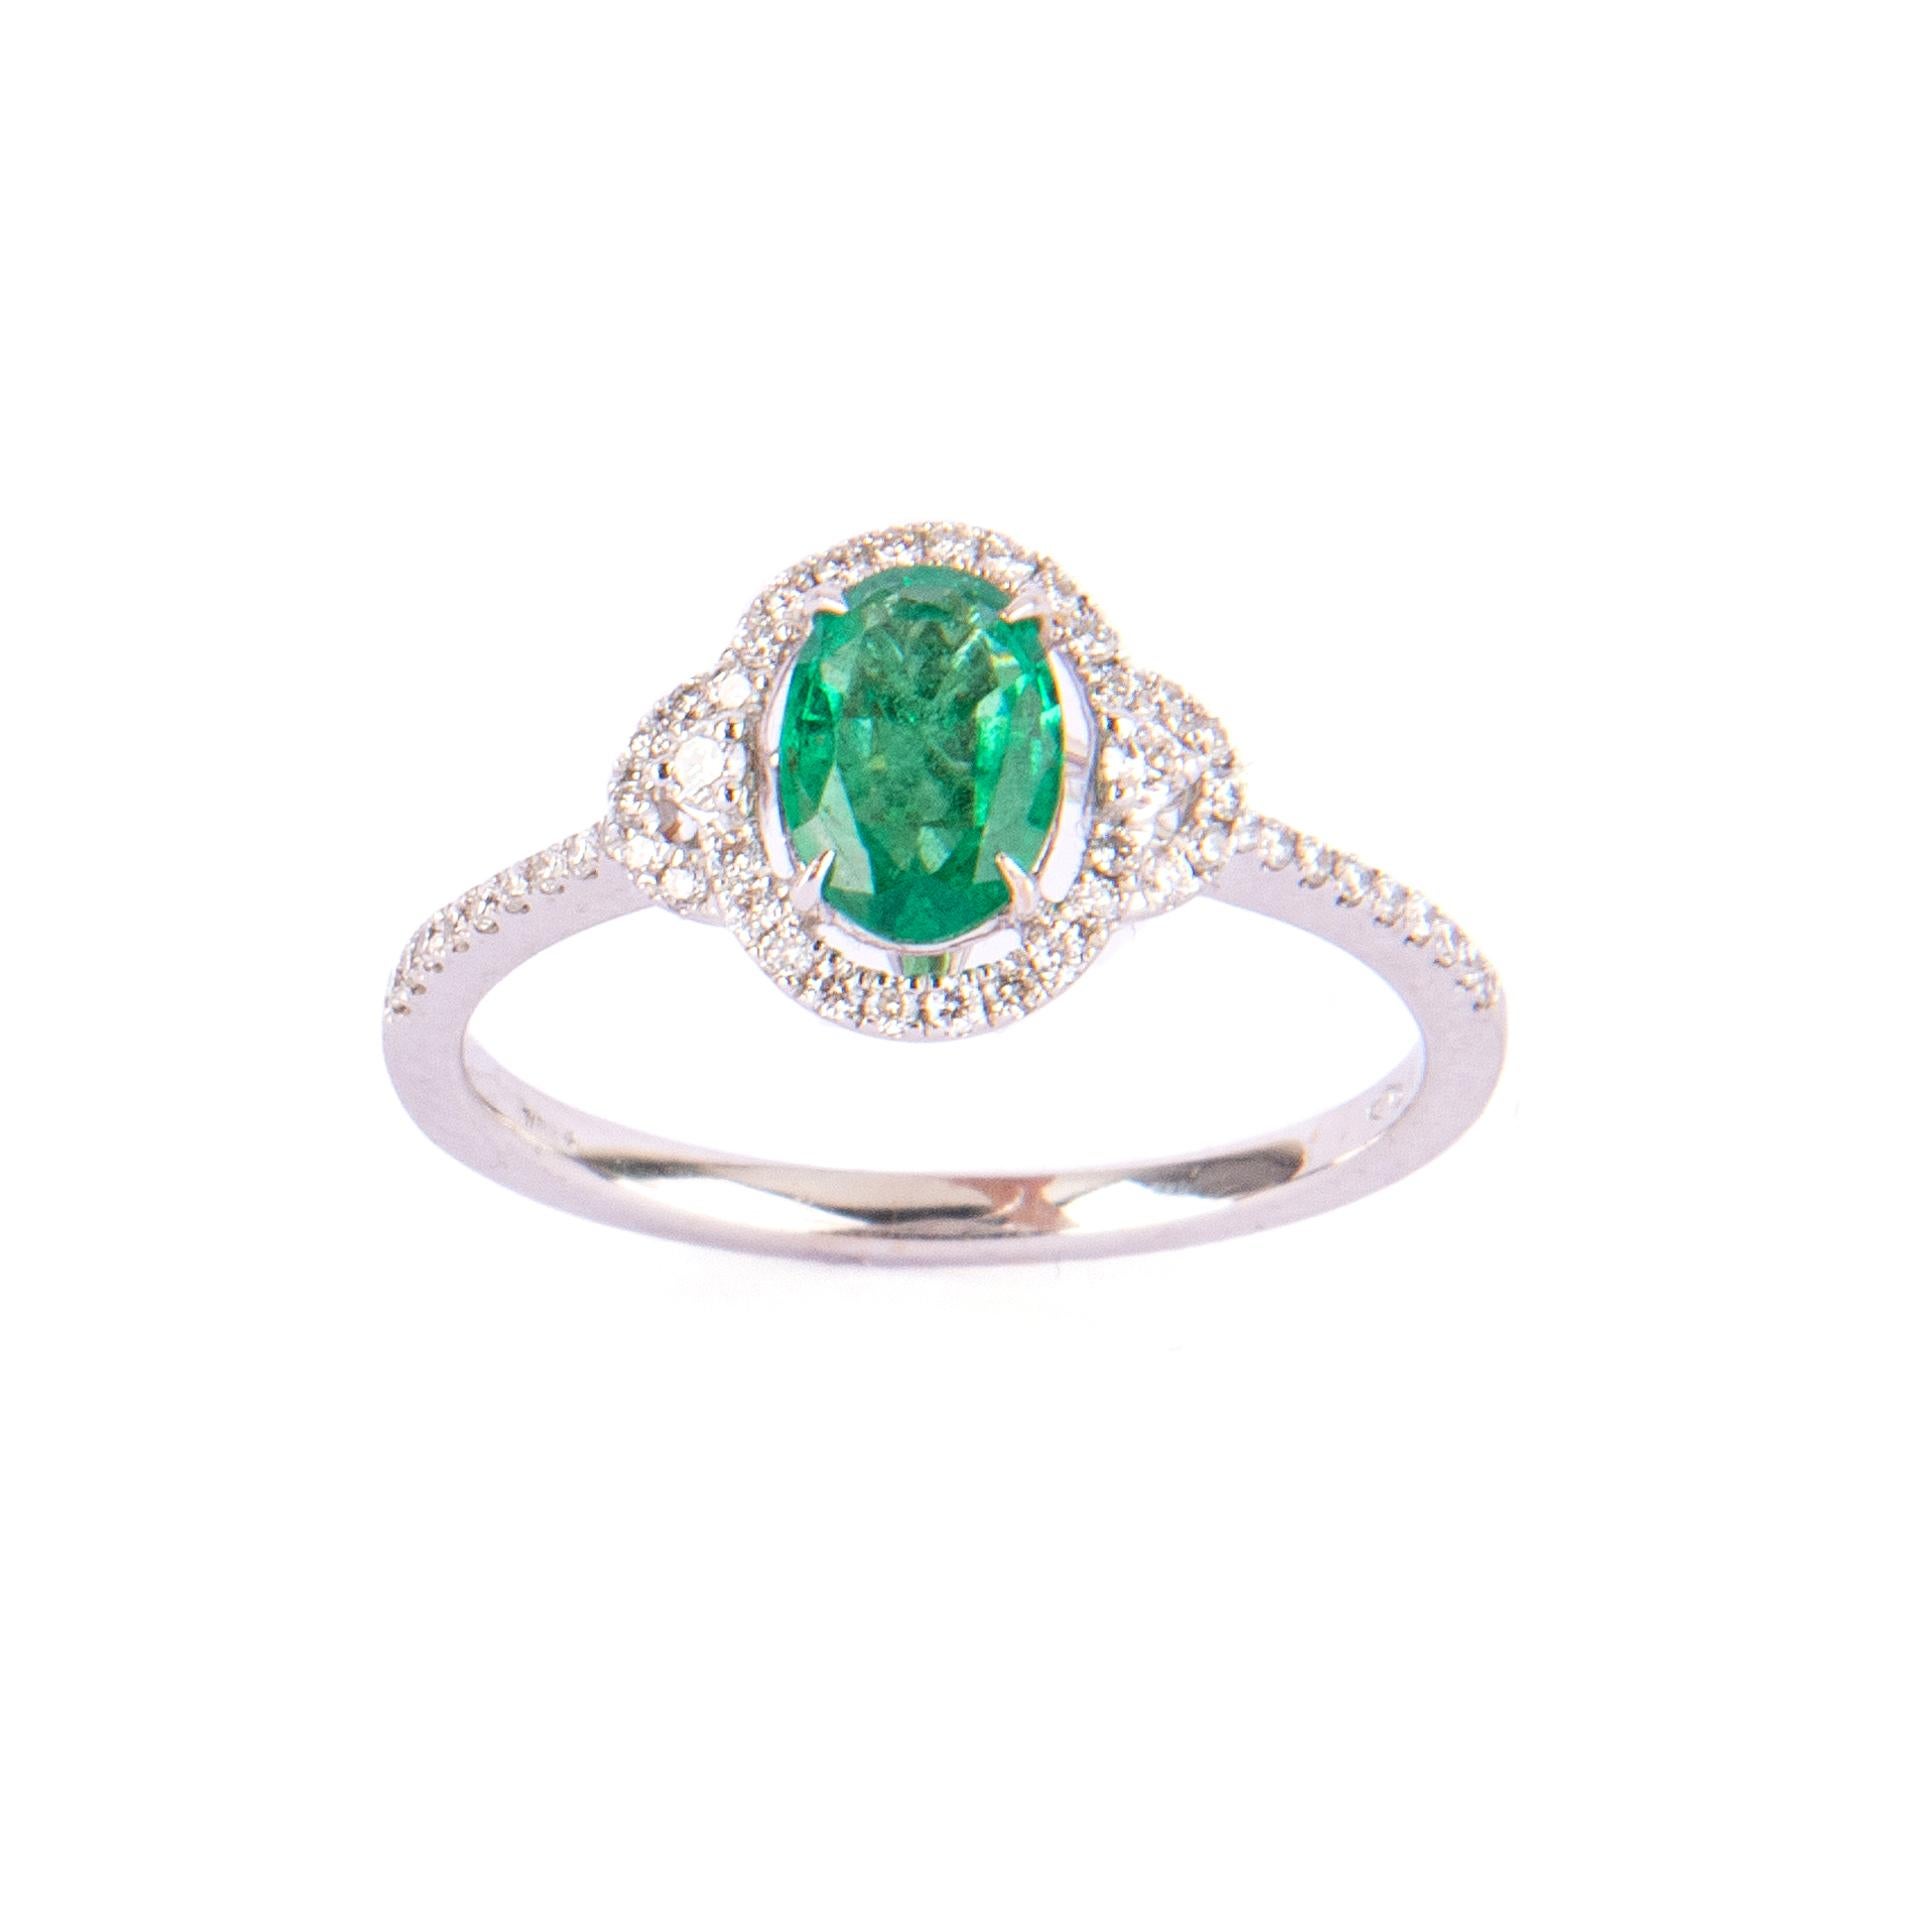 Hübscher kleiner Smaragd ct.0,68 Ring, besetzt mit kleinen Diamanten ct.0,23. Größe 14 Italienisch.
